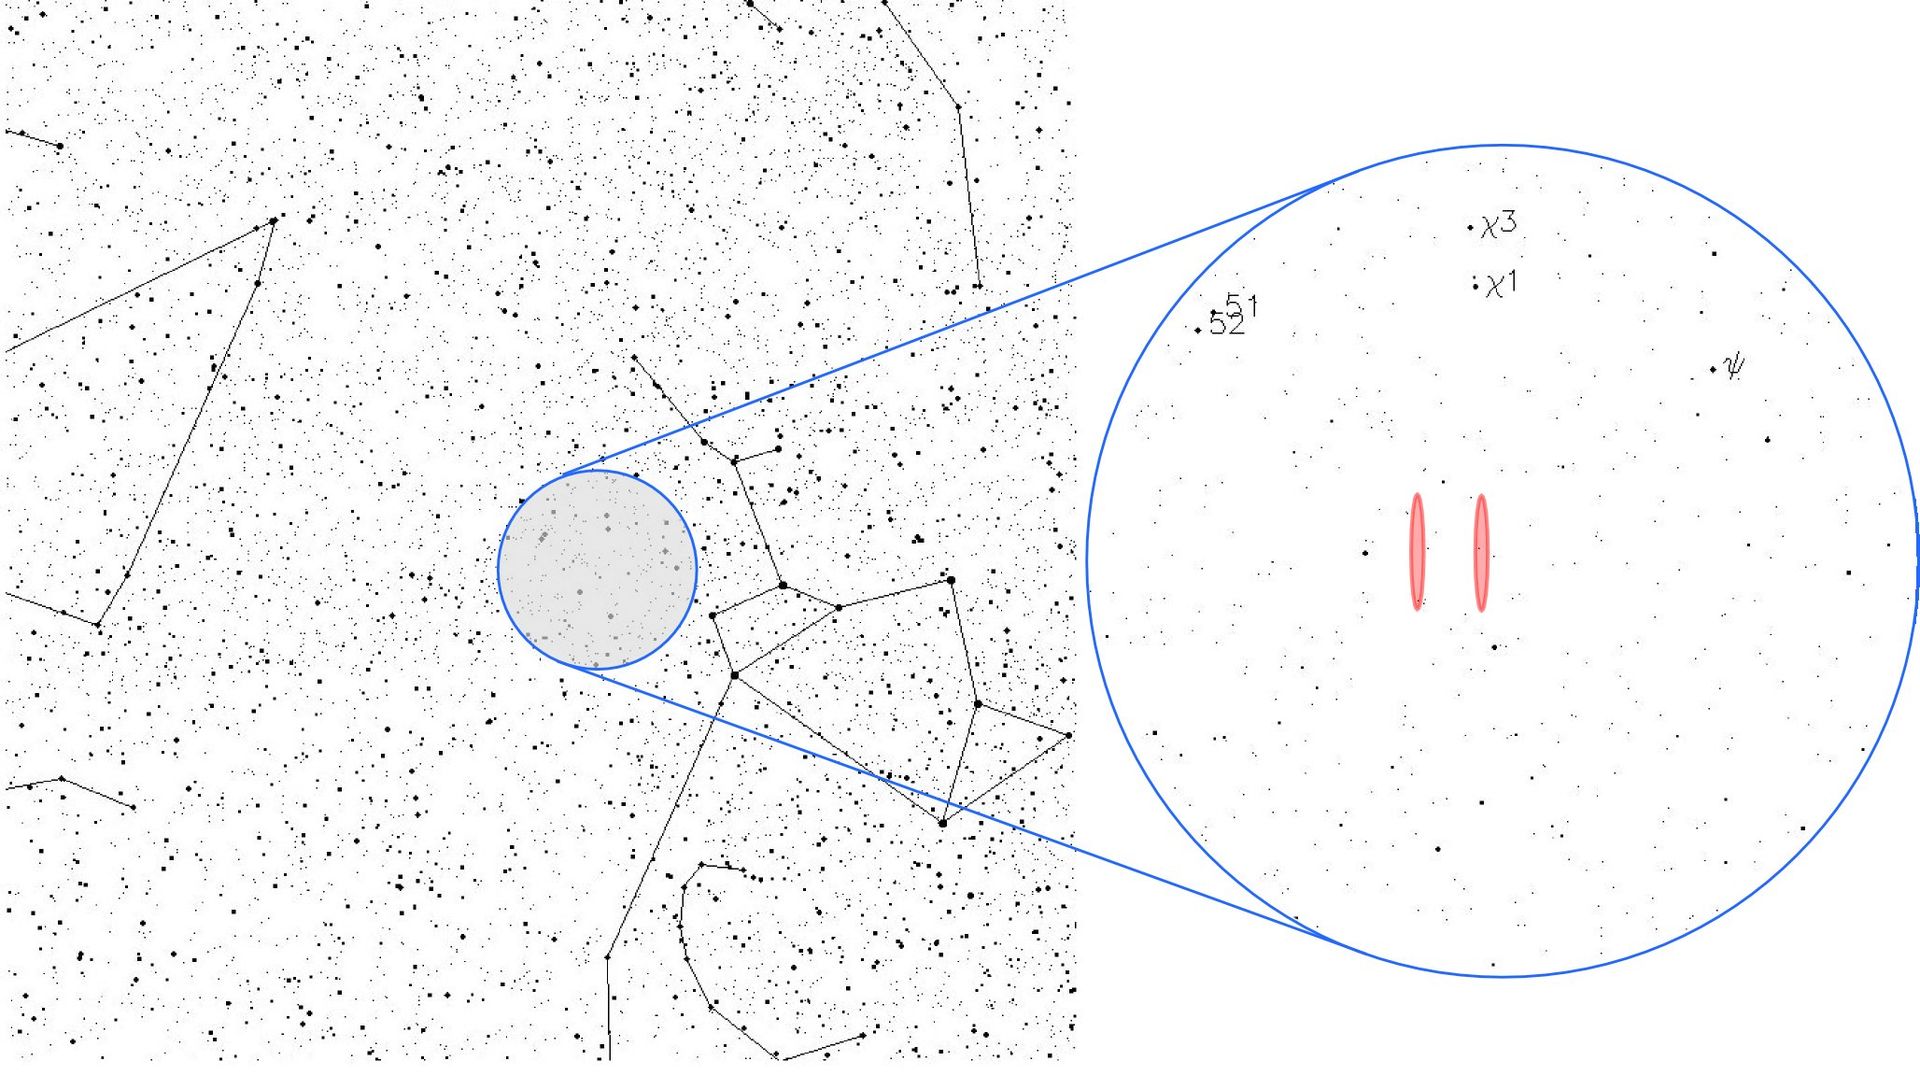 Возможные положения источника сигнала в созвездии Стрельца, вблизи звёздной группы χ Стрельца. Иллюстрация © Wikipedia / Benjamin Crowell